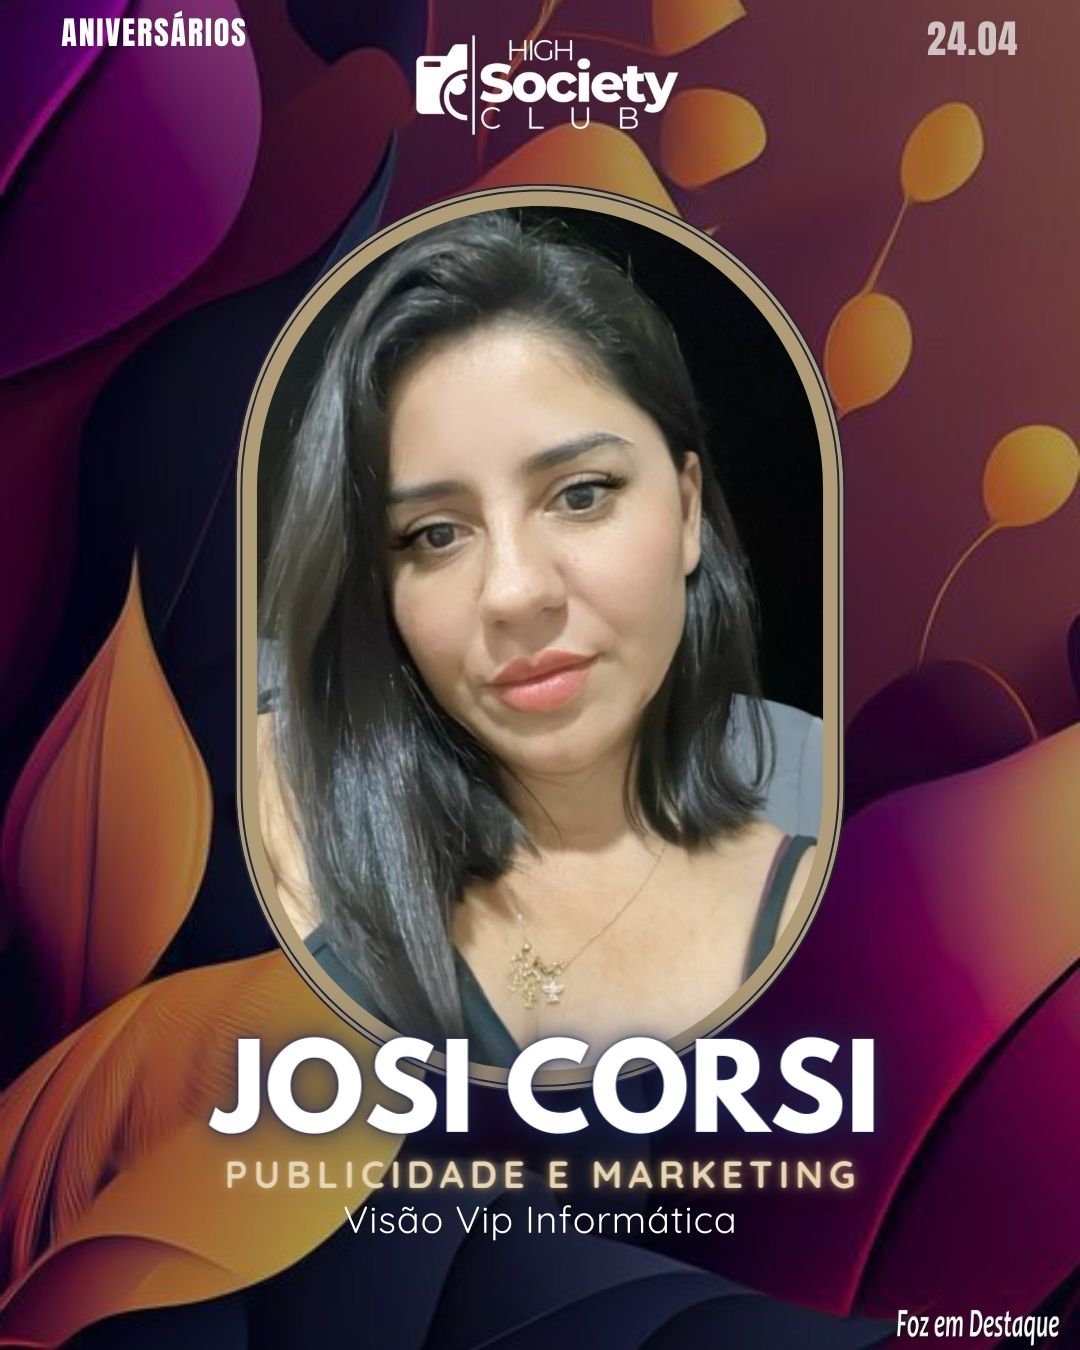 Josi Corsi - Publicidade e Marketing - Visão Vip Informática
 High Society Club Foz em Destaque